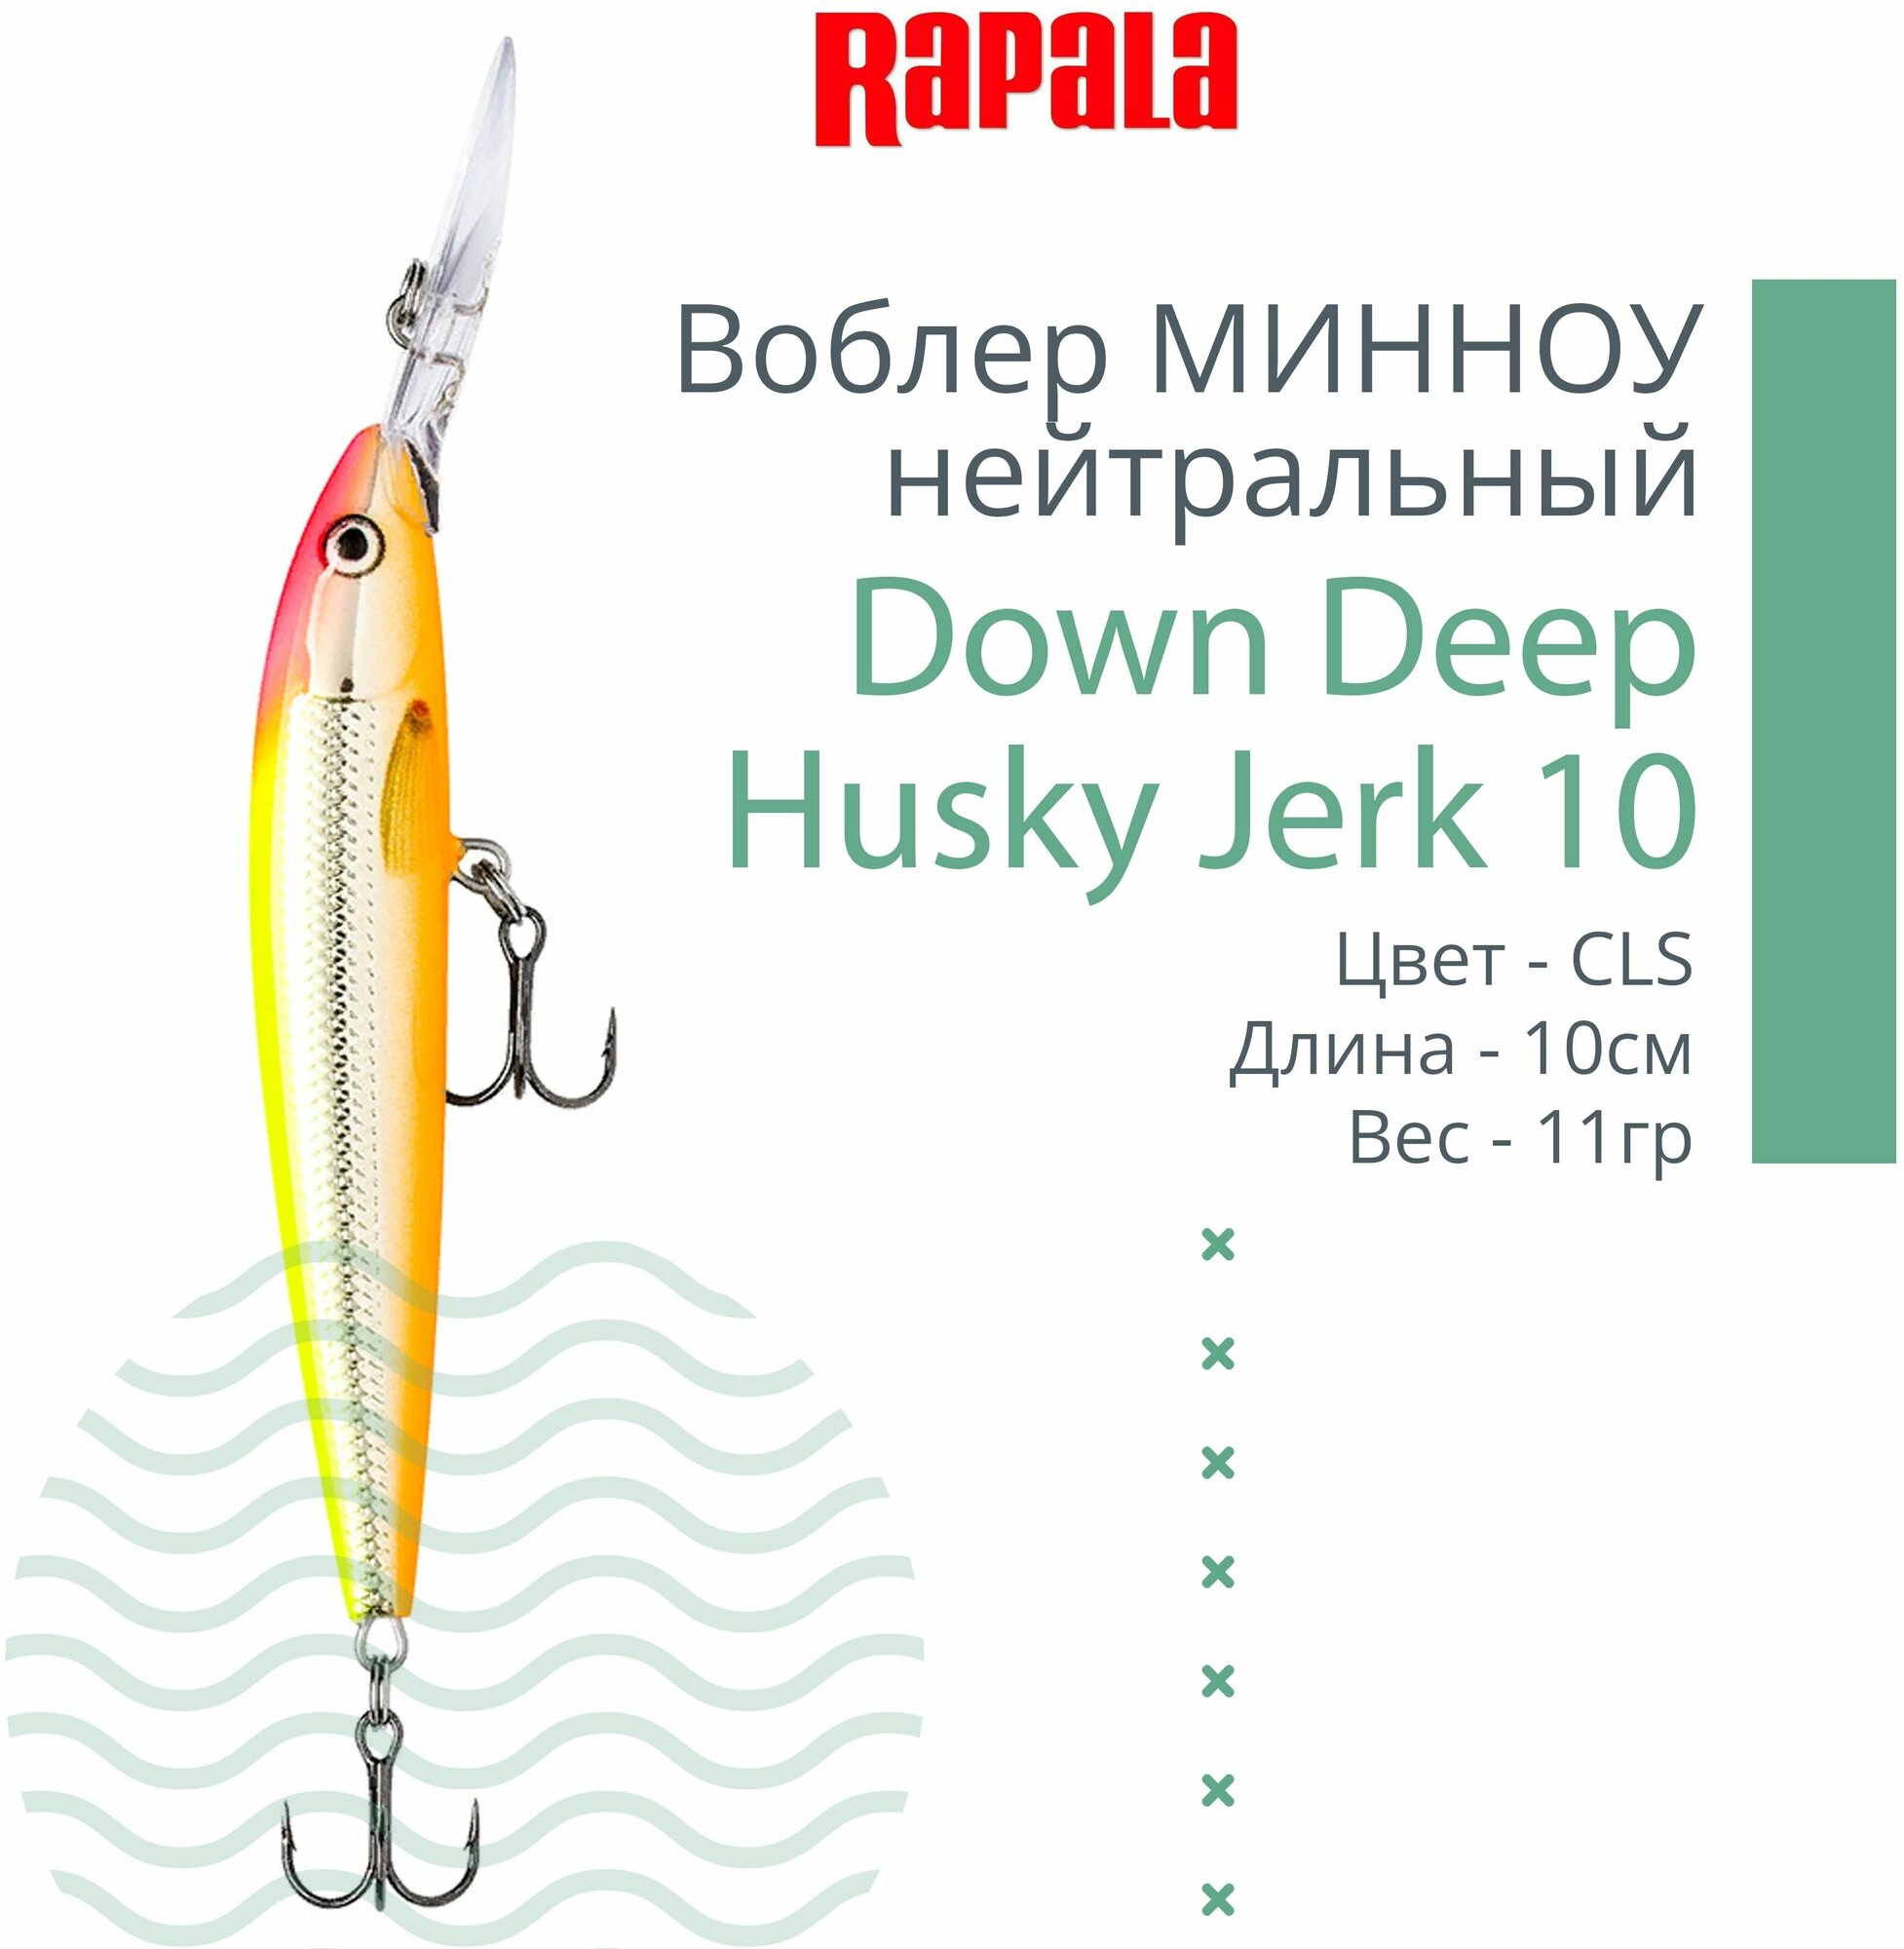 Воблер для рыбалки RAPALA Down Deep Husky Jerk 10, 10см, 11гр, цвет CLS, нейтральный